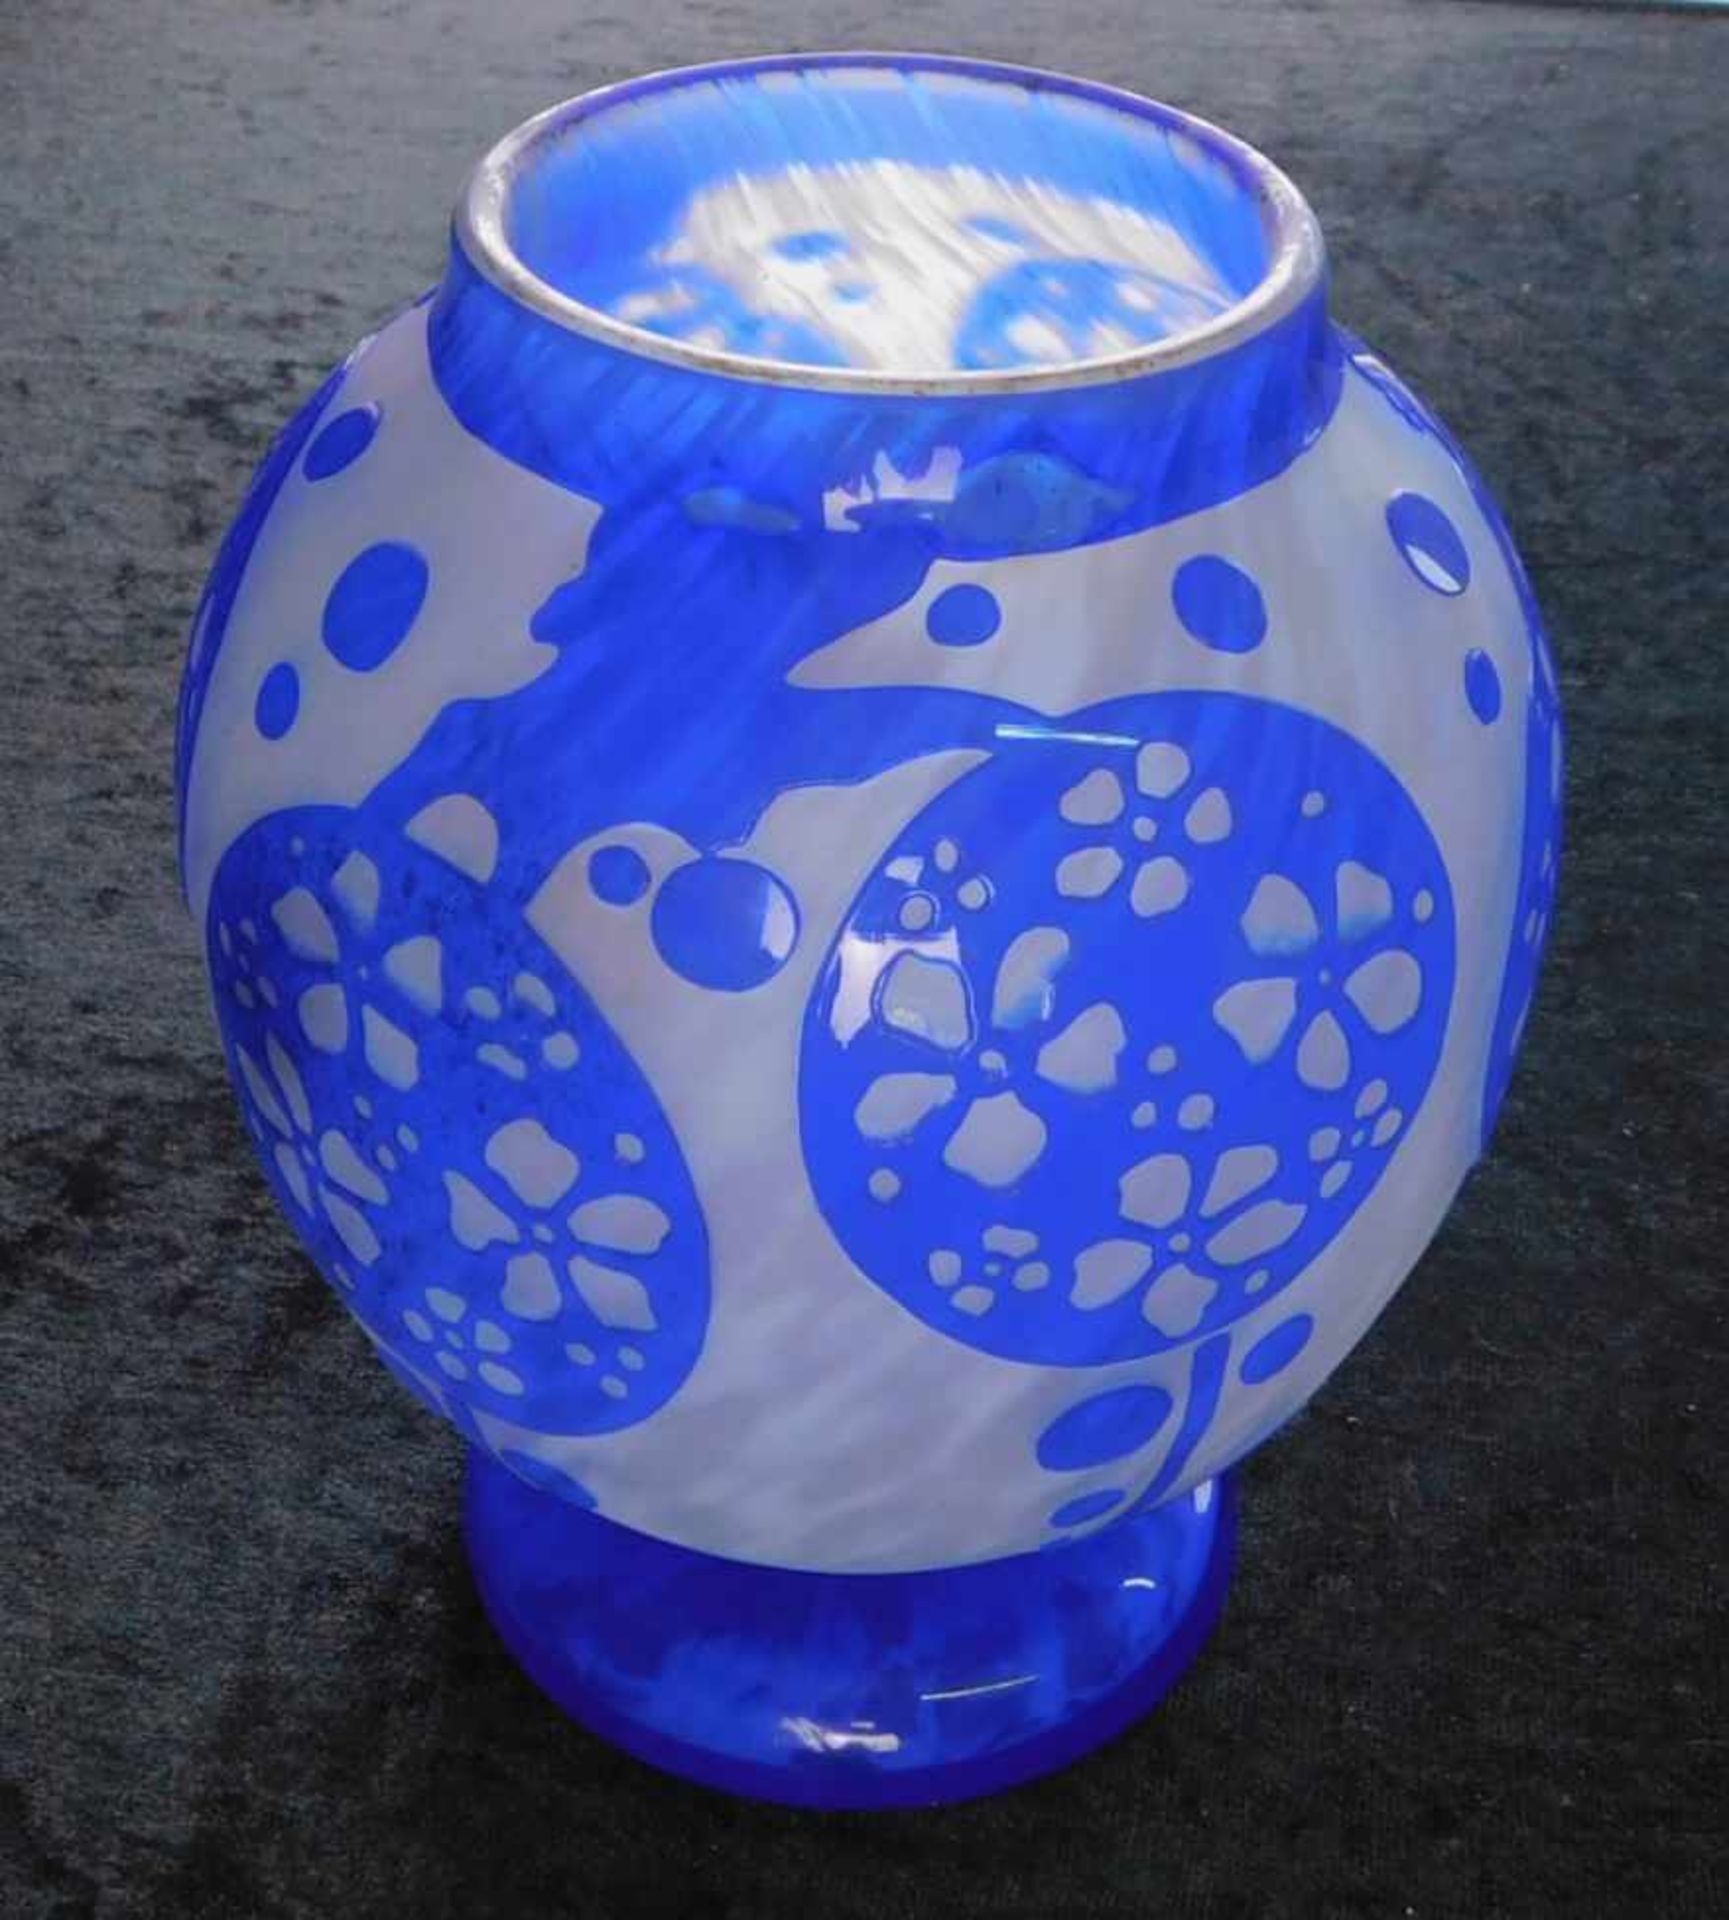 Verreries Schneider, Epinay-sur-Seine, kleine Vase "Azurettes", 1923-26, Reliefätzung